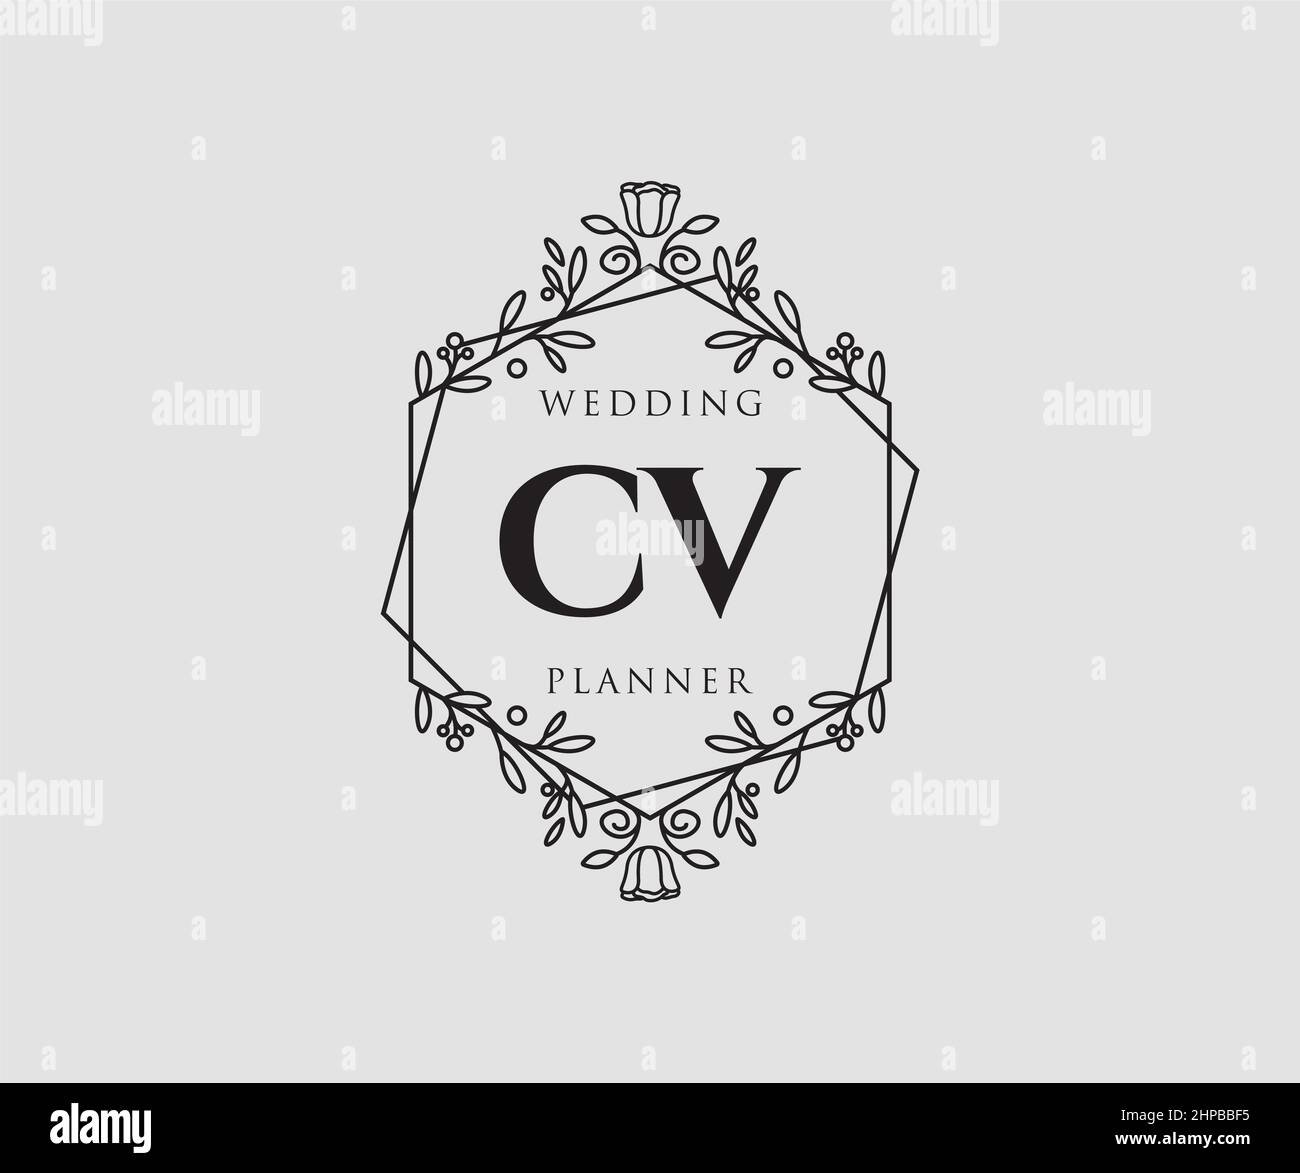 Free Vector  Hand drawn wedding logo collectio